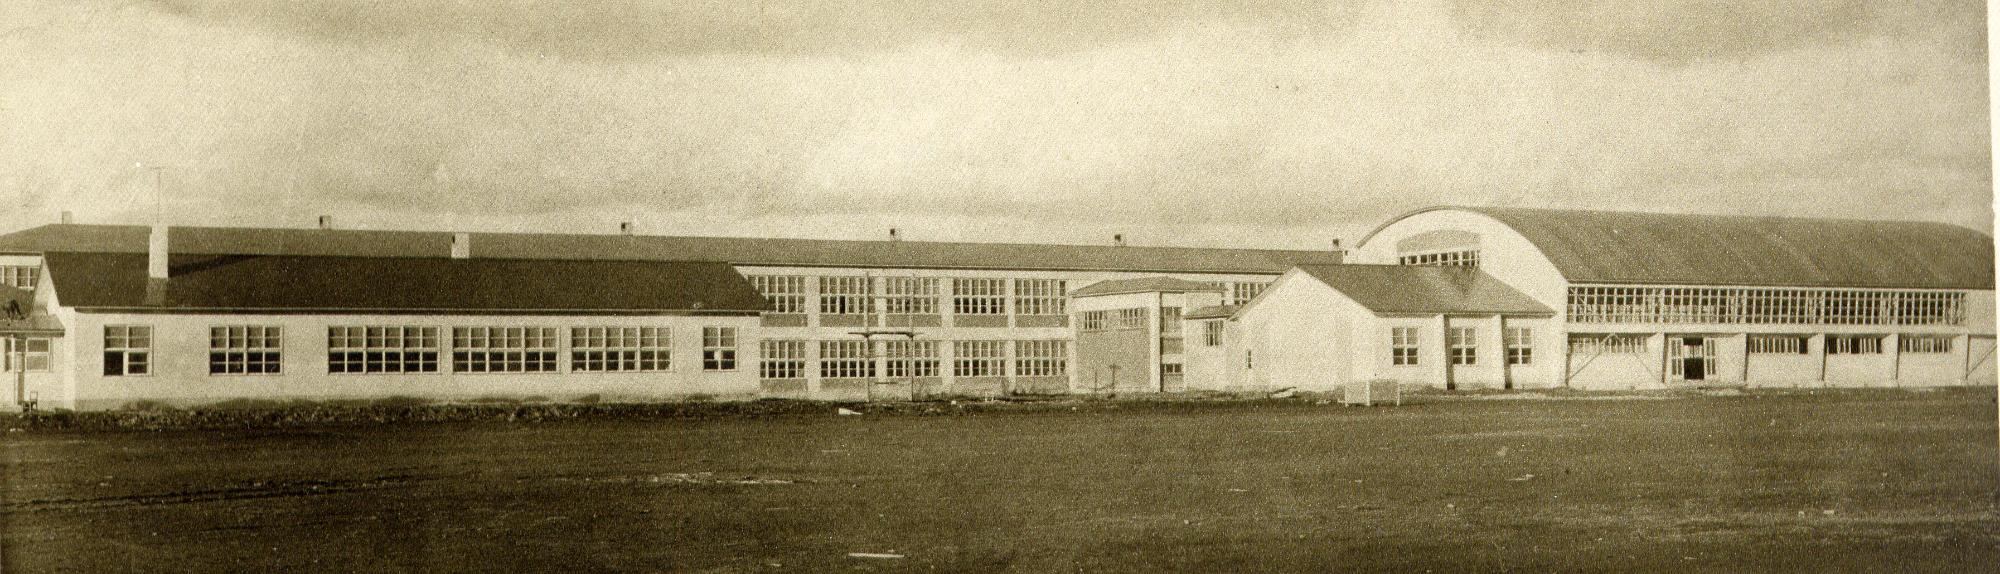 左側と奥に横長の校舎、右側に体育館が建てられた小学校を校庭から撮影した白黒写真